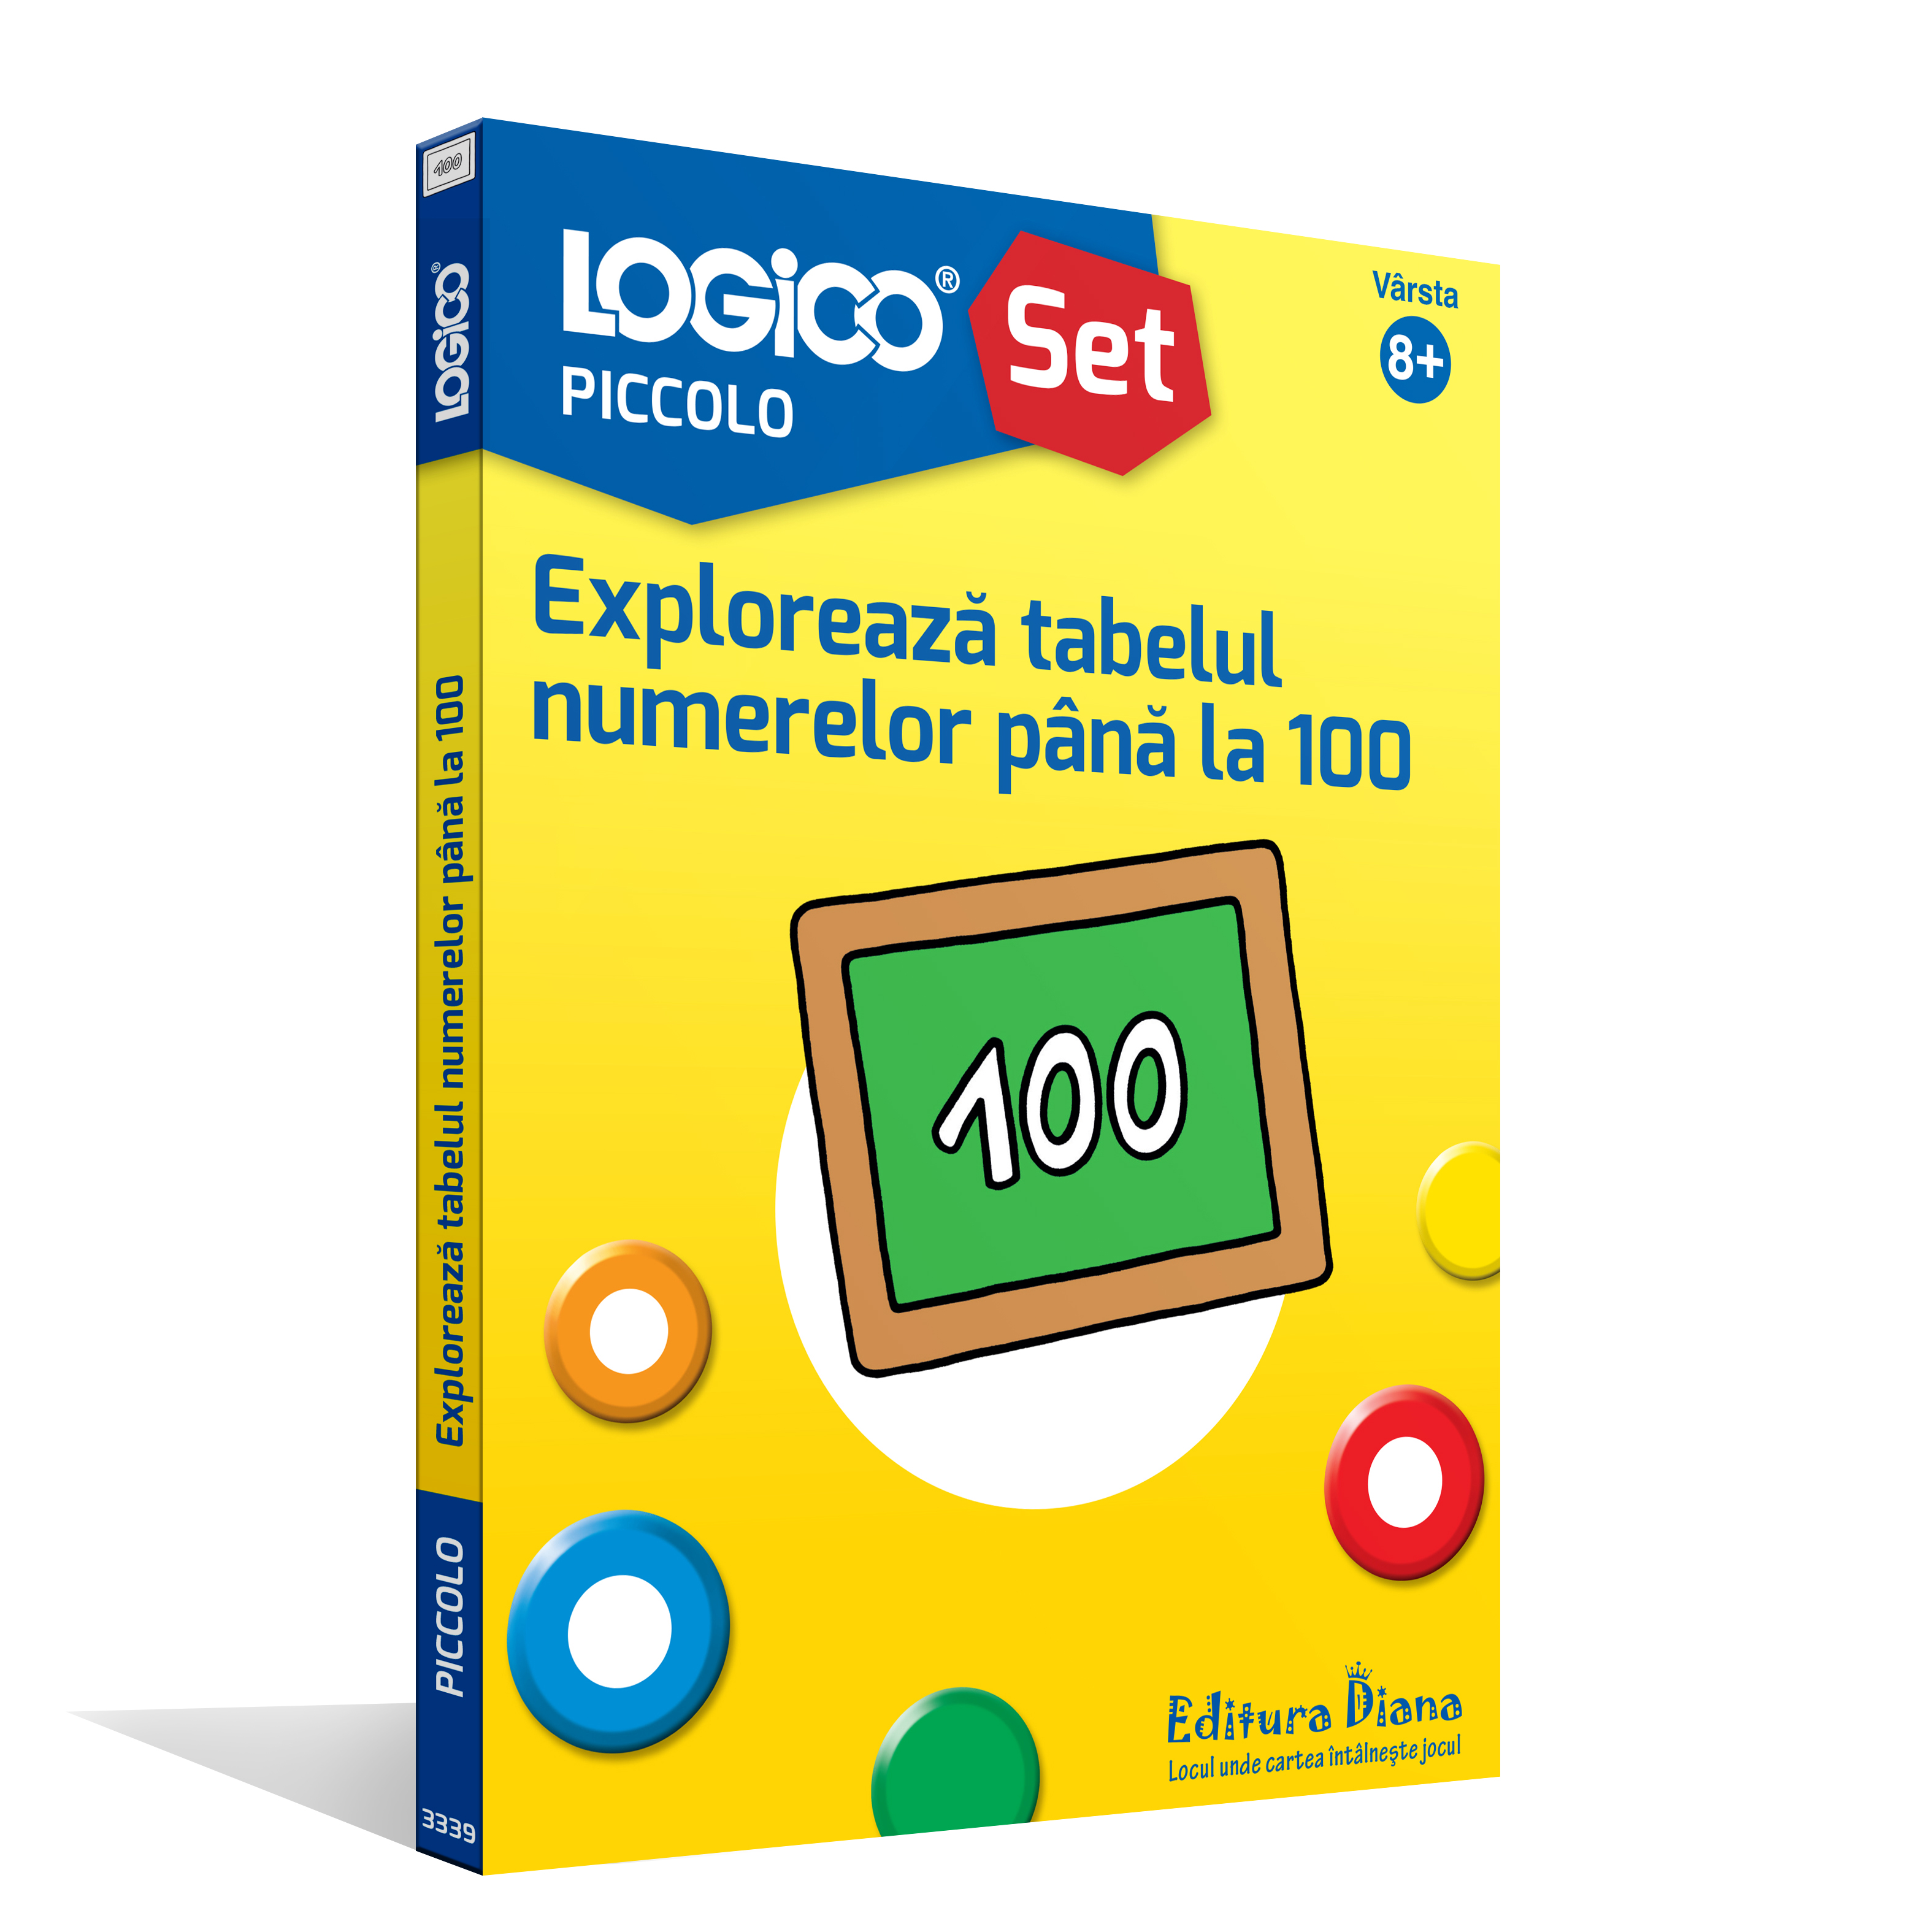 Vezi detalii pentru LOGICO PICCOLO - Explorează tabelul numerelor până la 100 (8+)